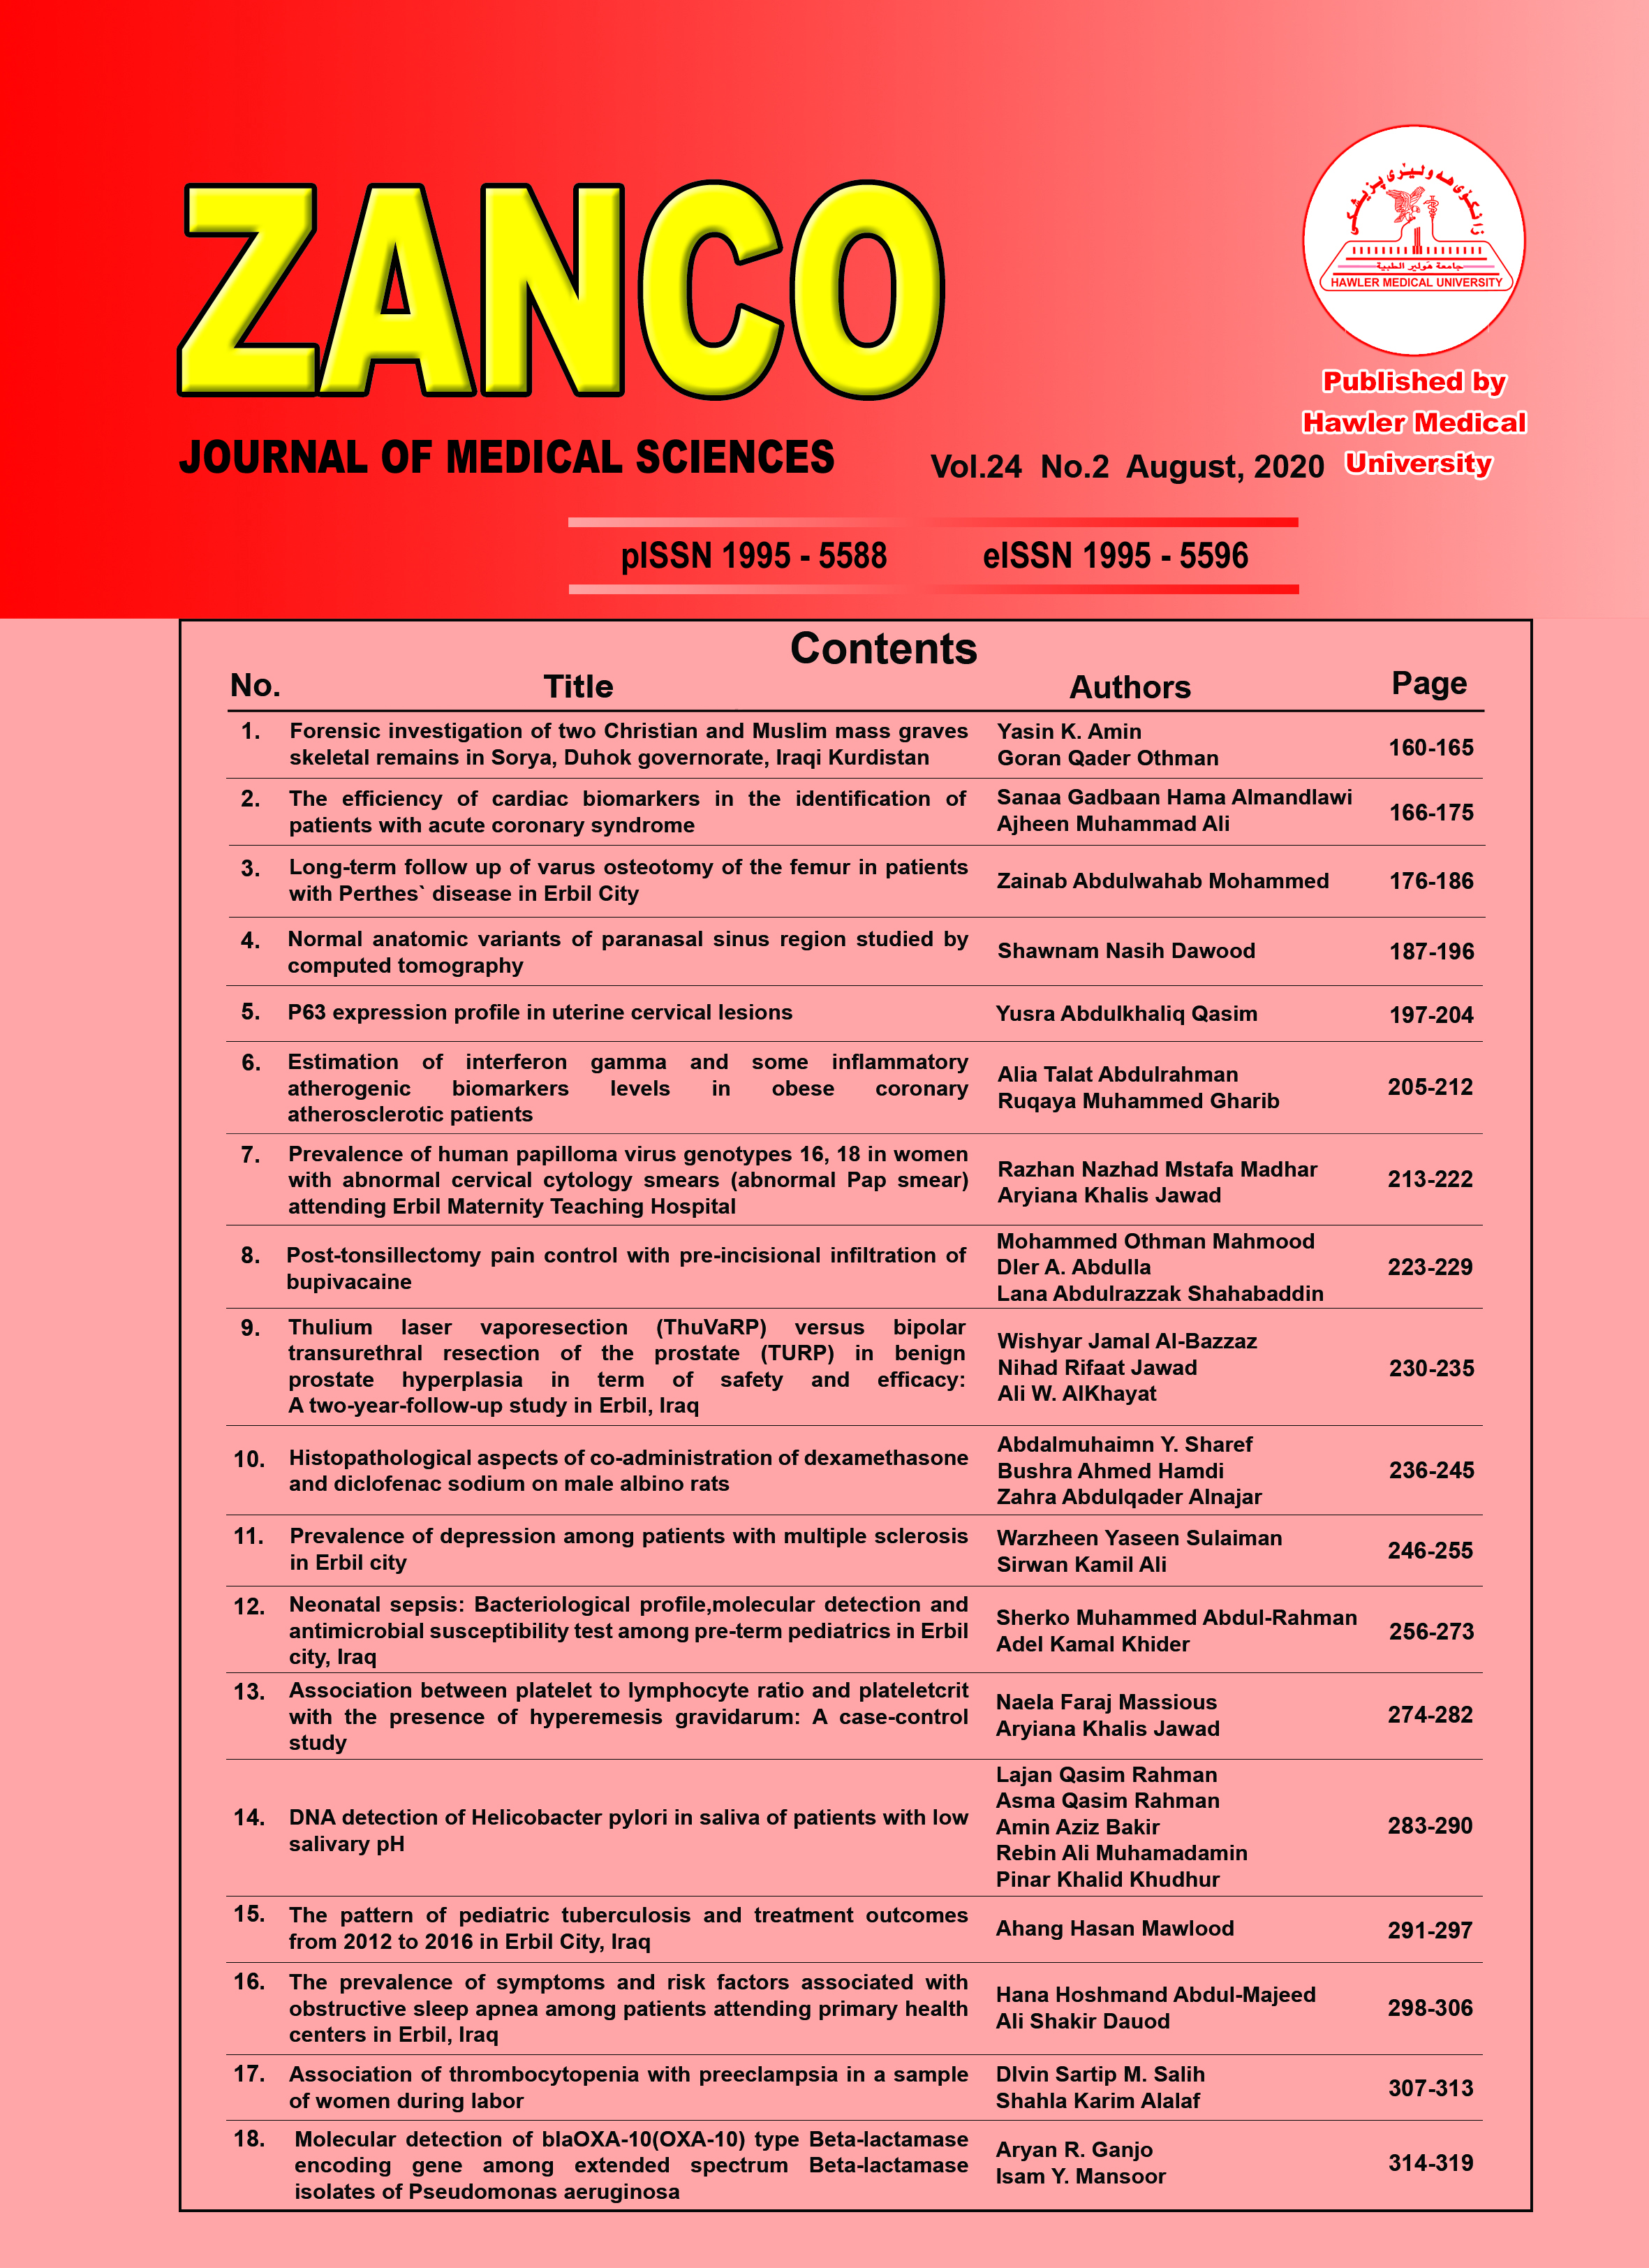 Zanco Journal